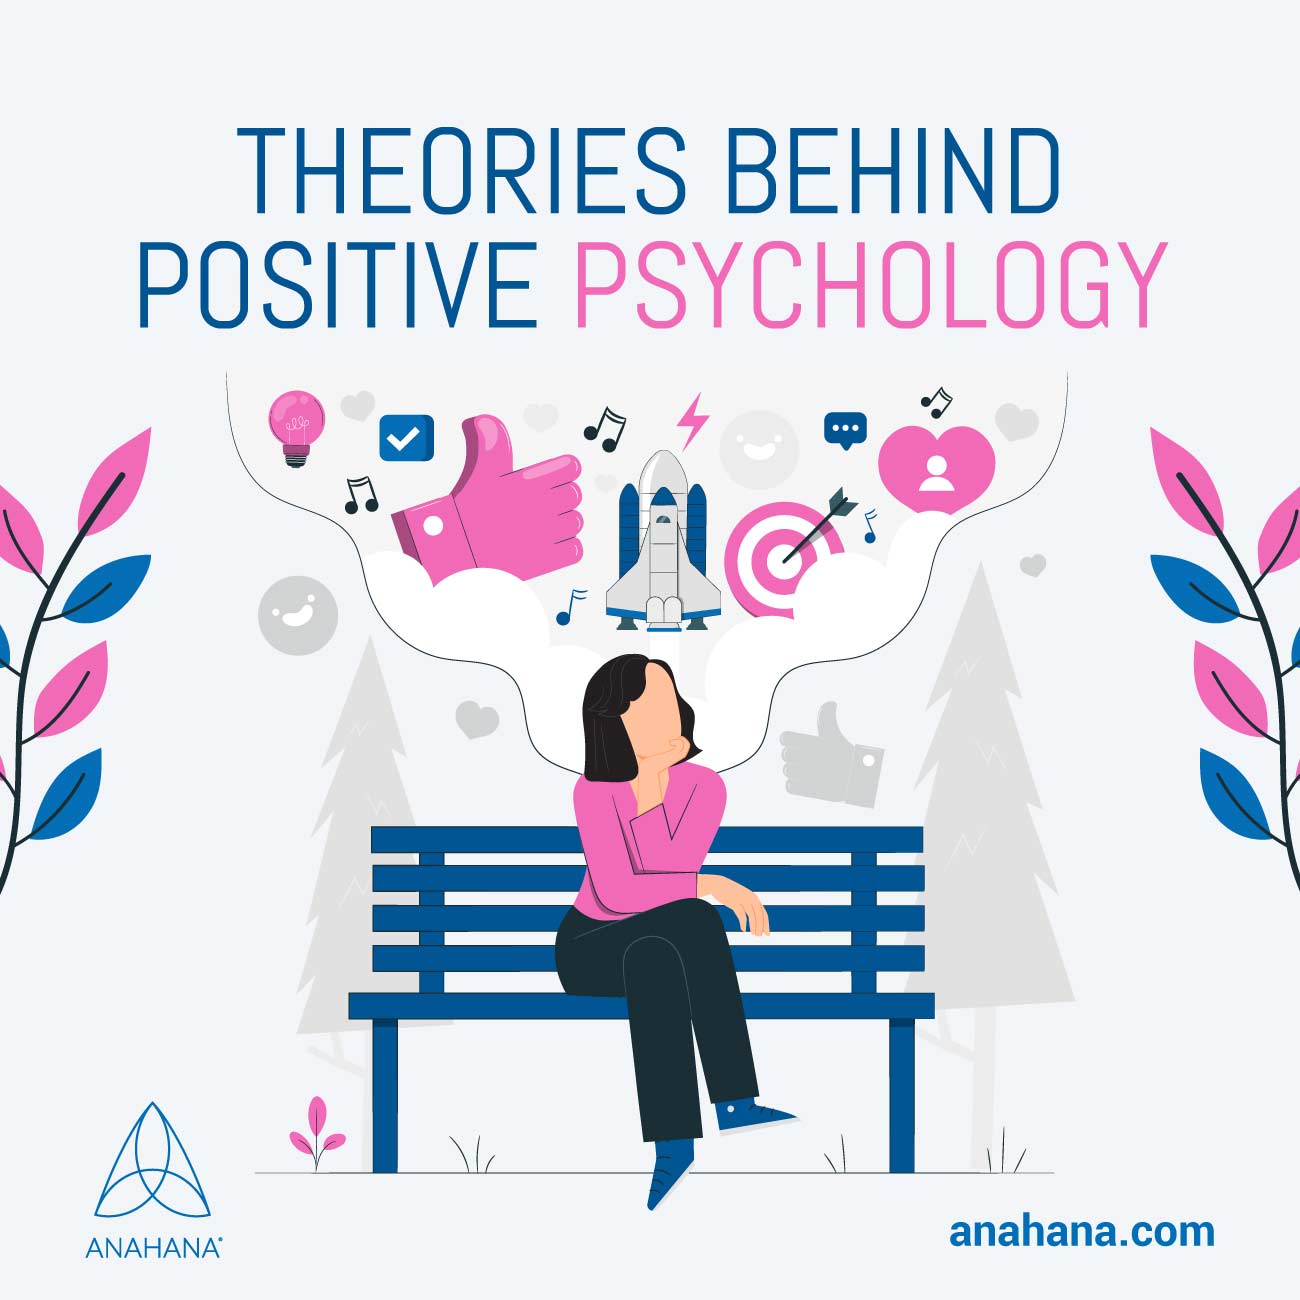 теории, лежащие в основе позитивной психологии